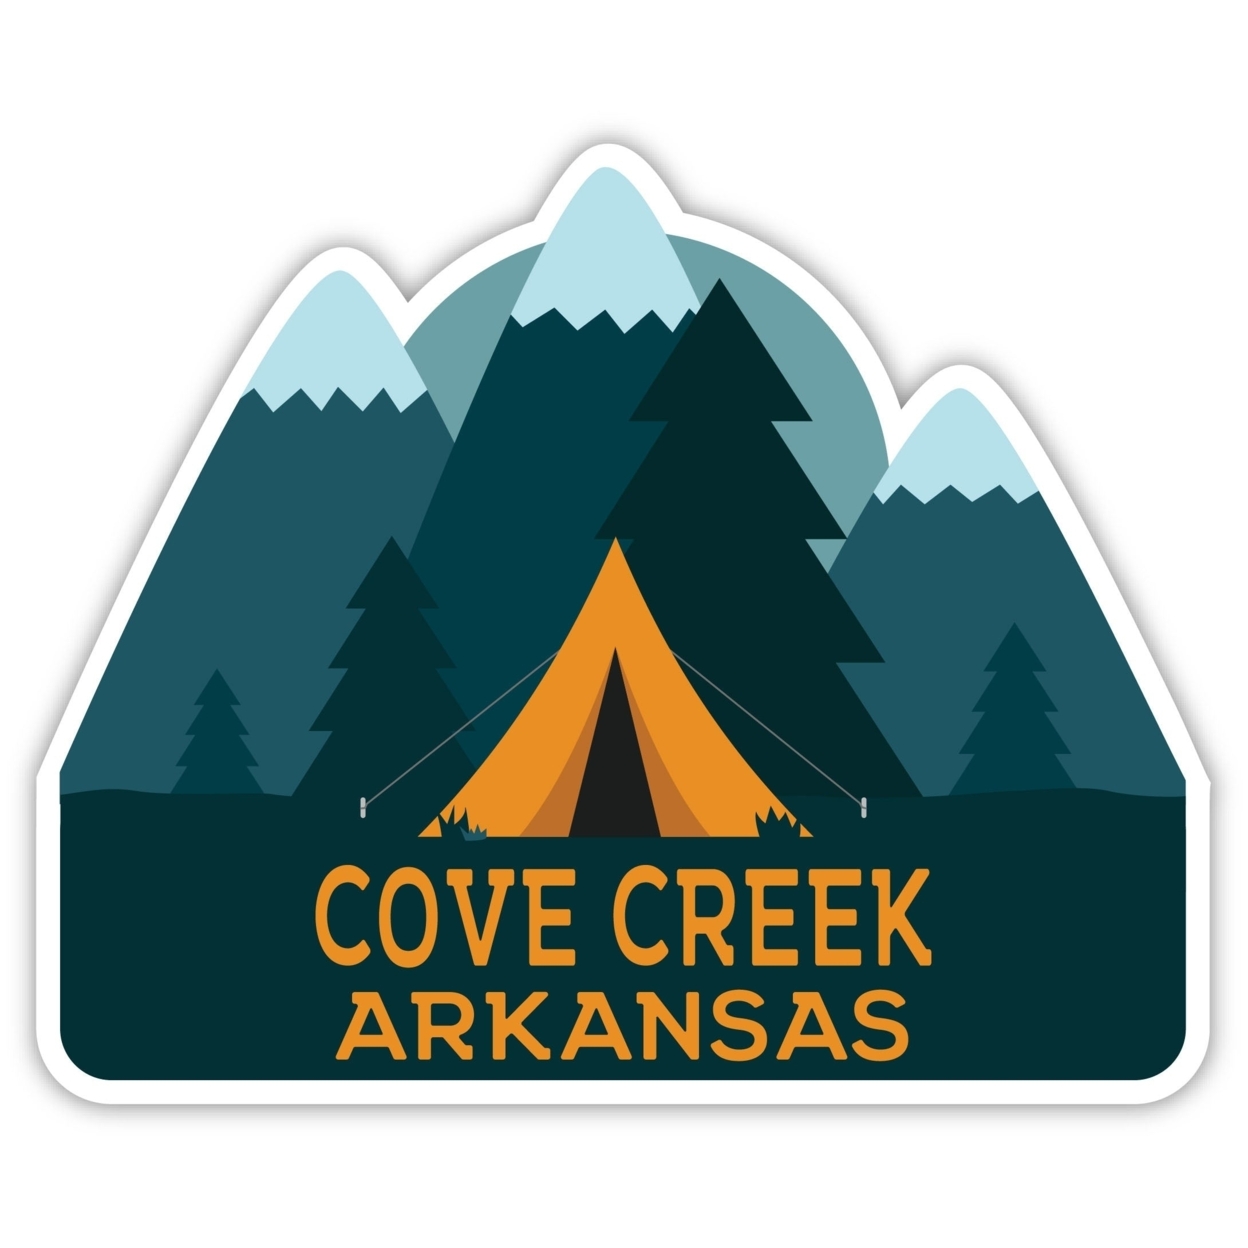 Cove Creek Arkansas Souvenir Decorative Stickers (Choose Theme And Size) - Single Unit, 2-Inch, Tent